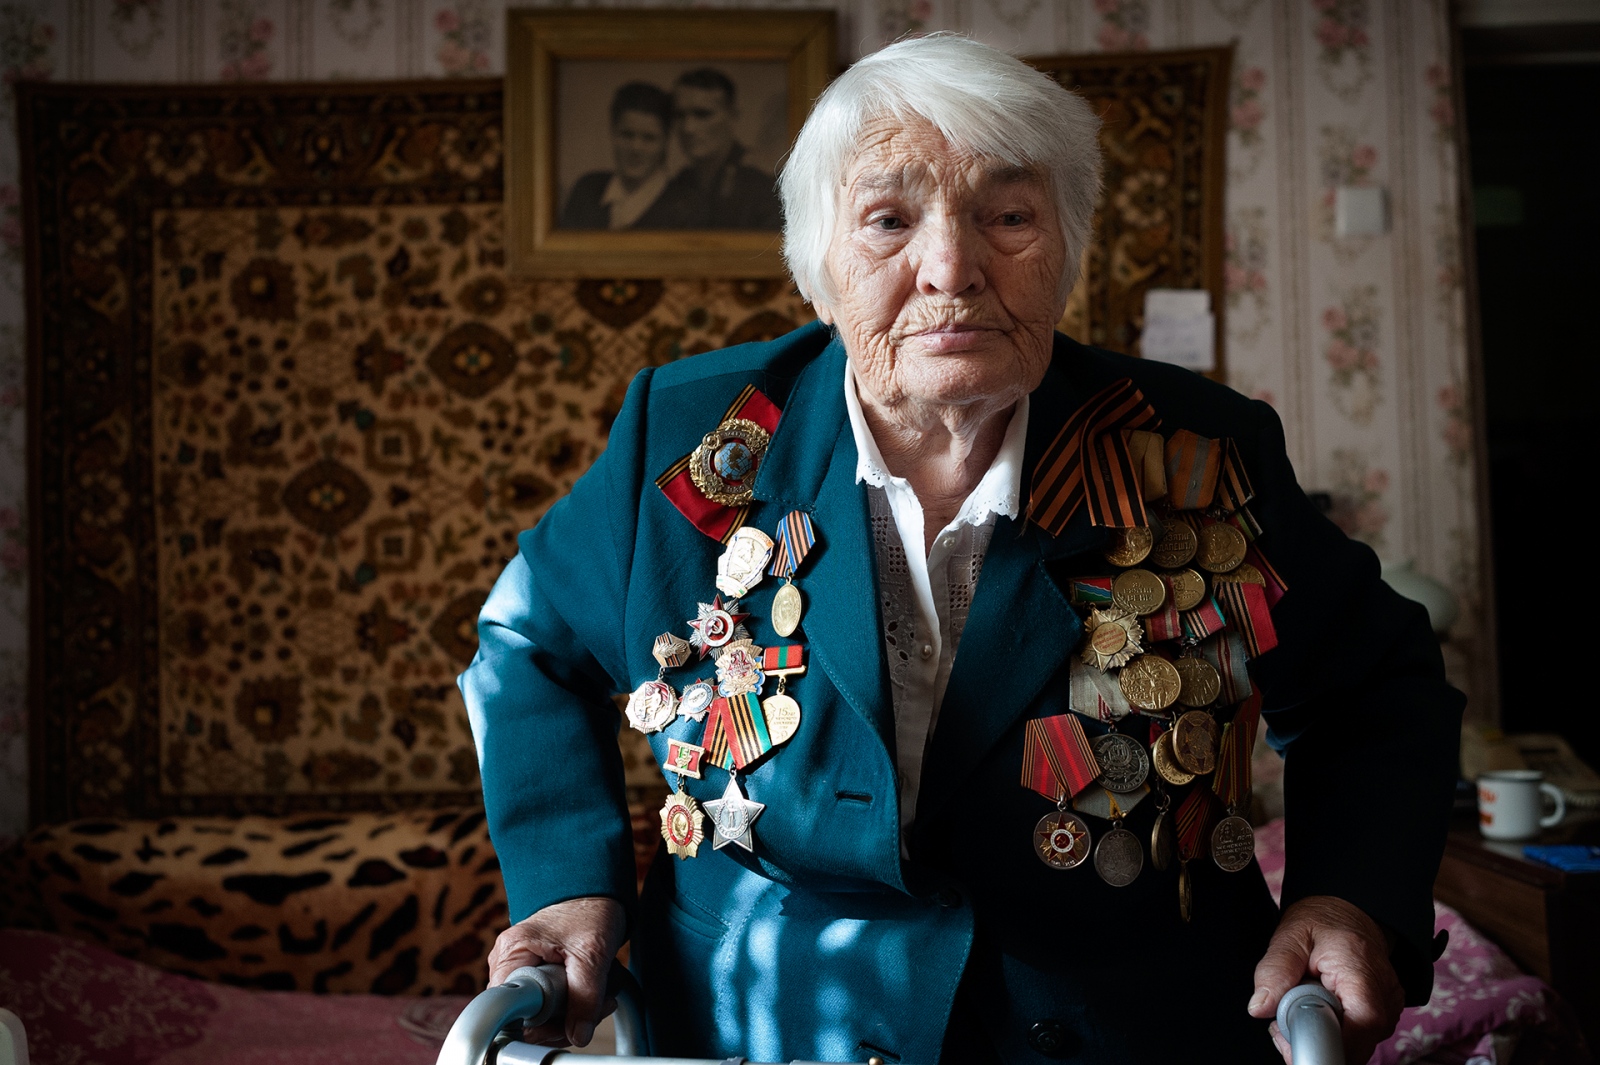 Ievdonija Filinovja (95 years o... ask for Russian nationality). 